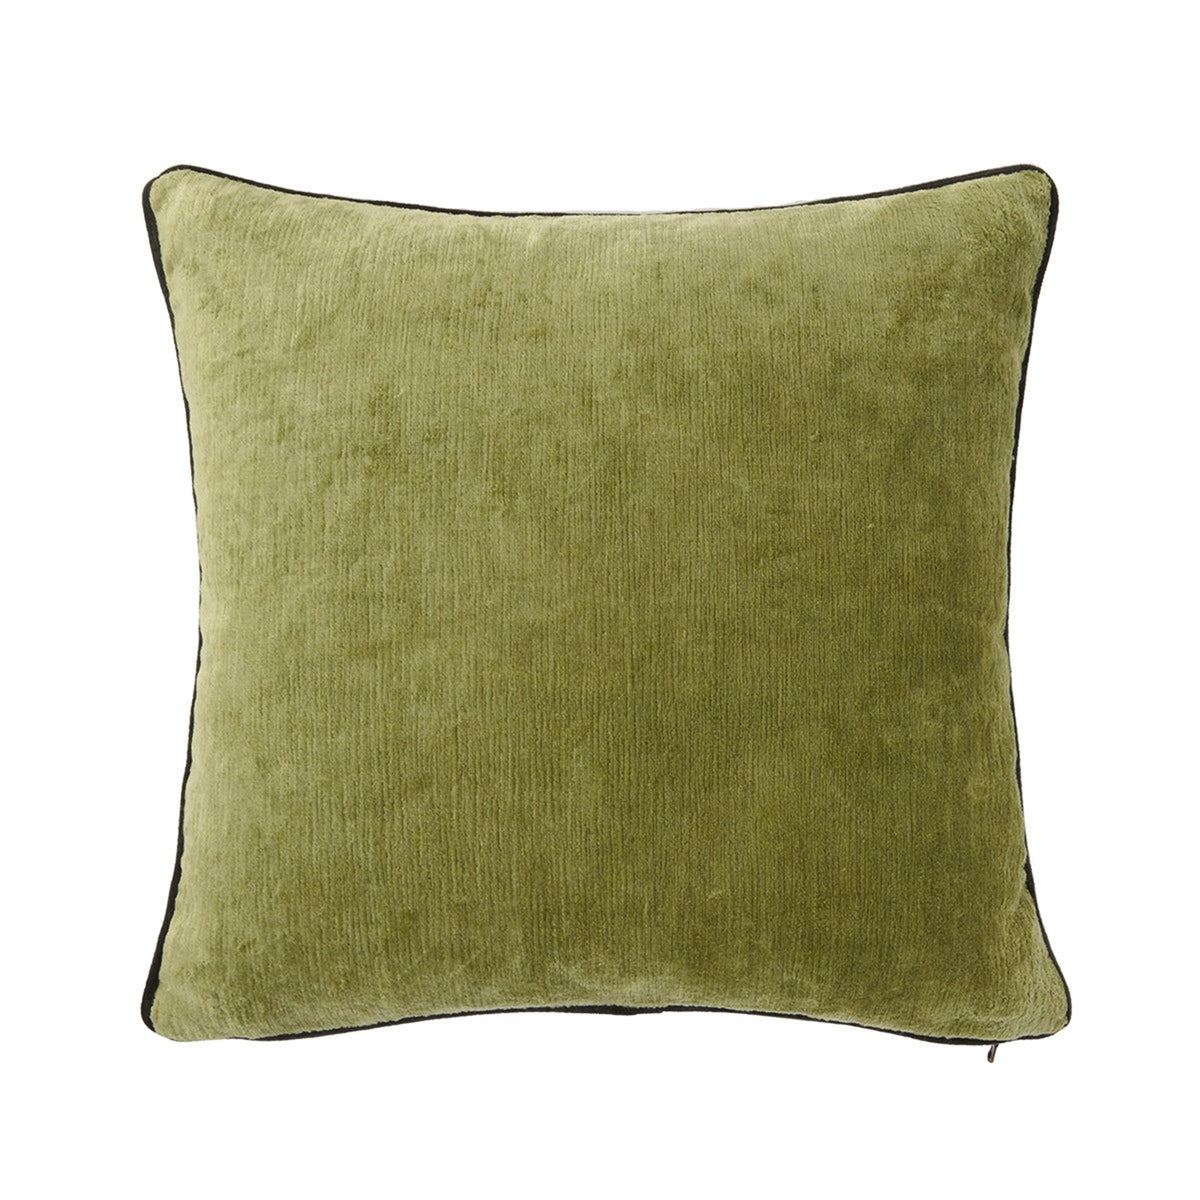 Silo Image of Yves Delorme Iosis Boromee Square Decorative Pillow in Kaki Color